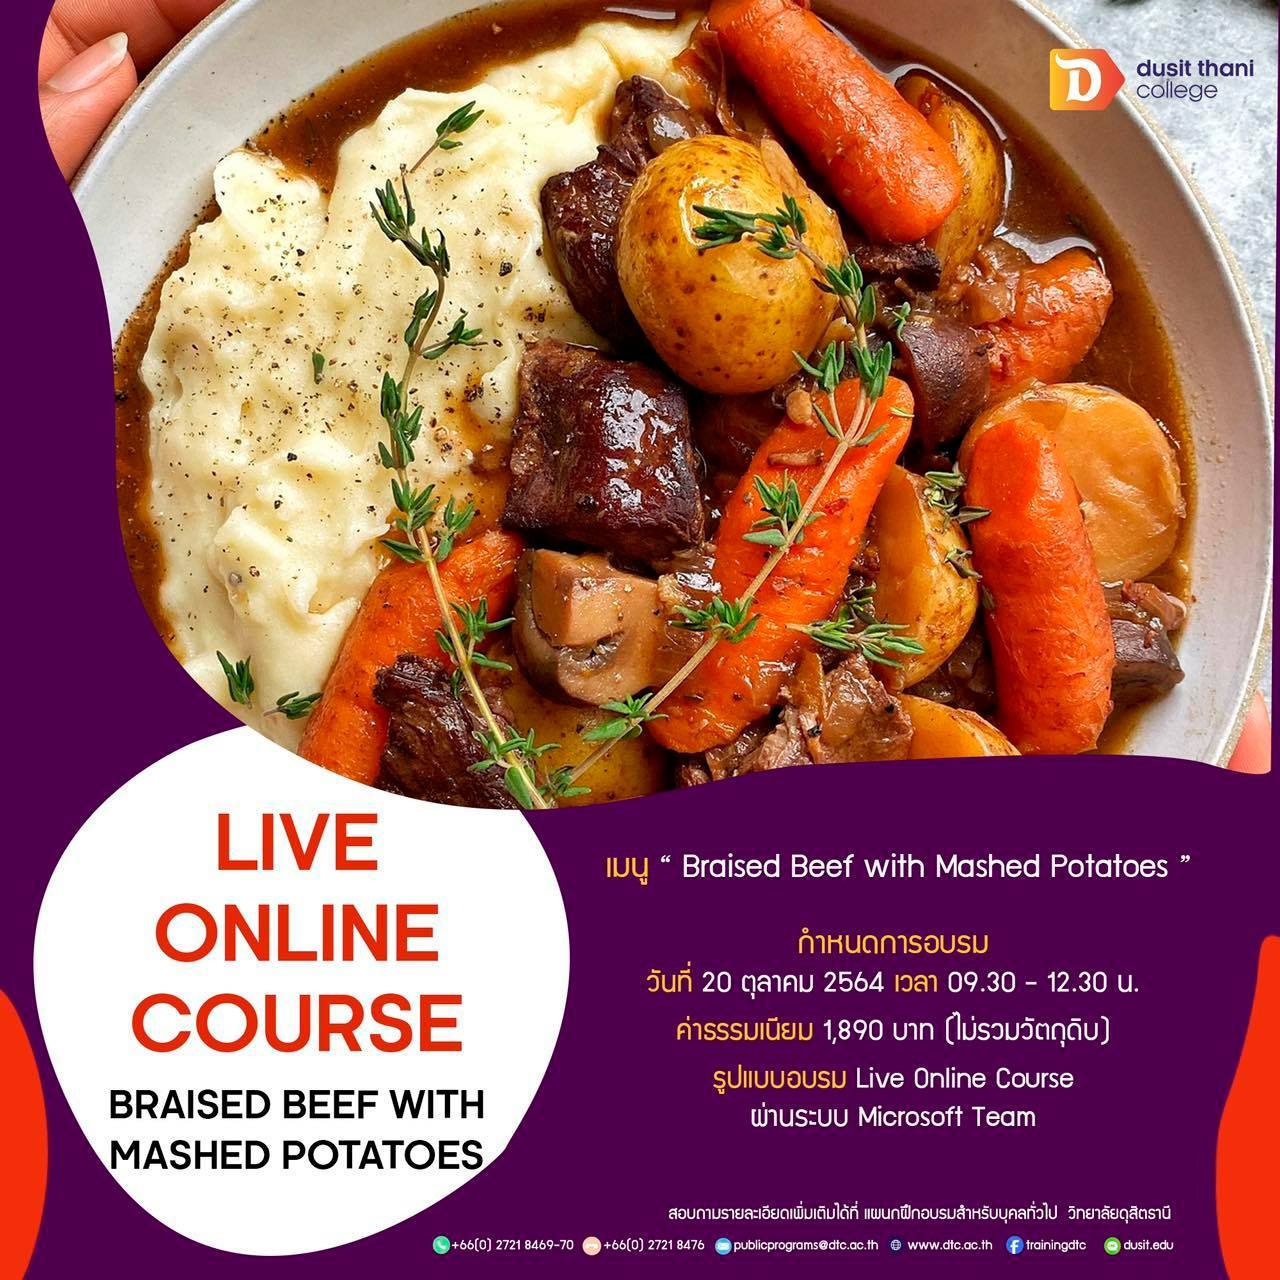 หลักสูตร Online Course เมนู Braised Beef with Mashed Potatoes